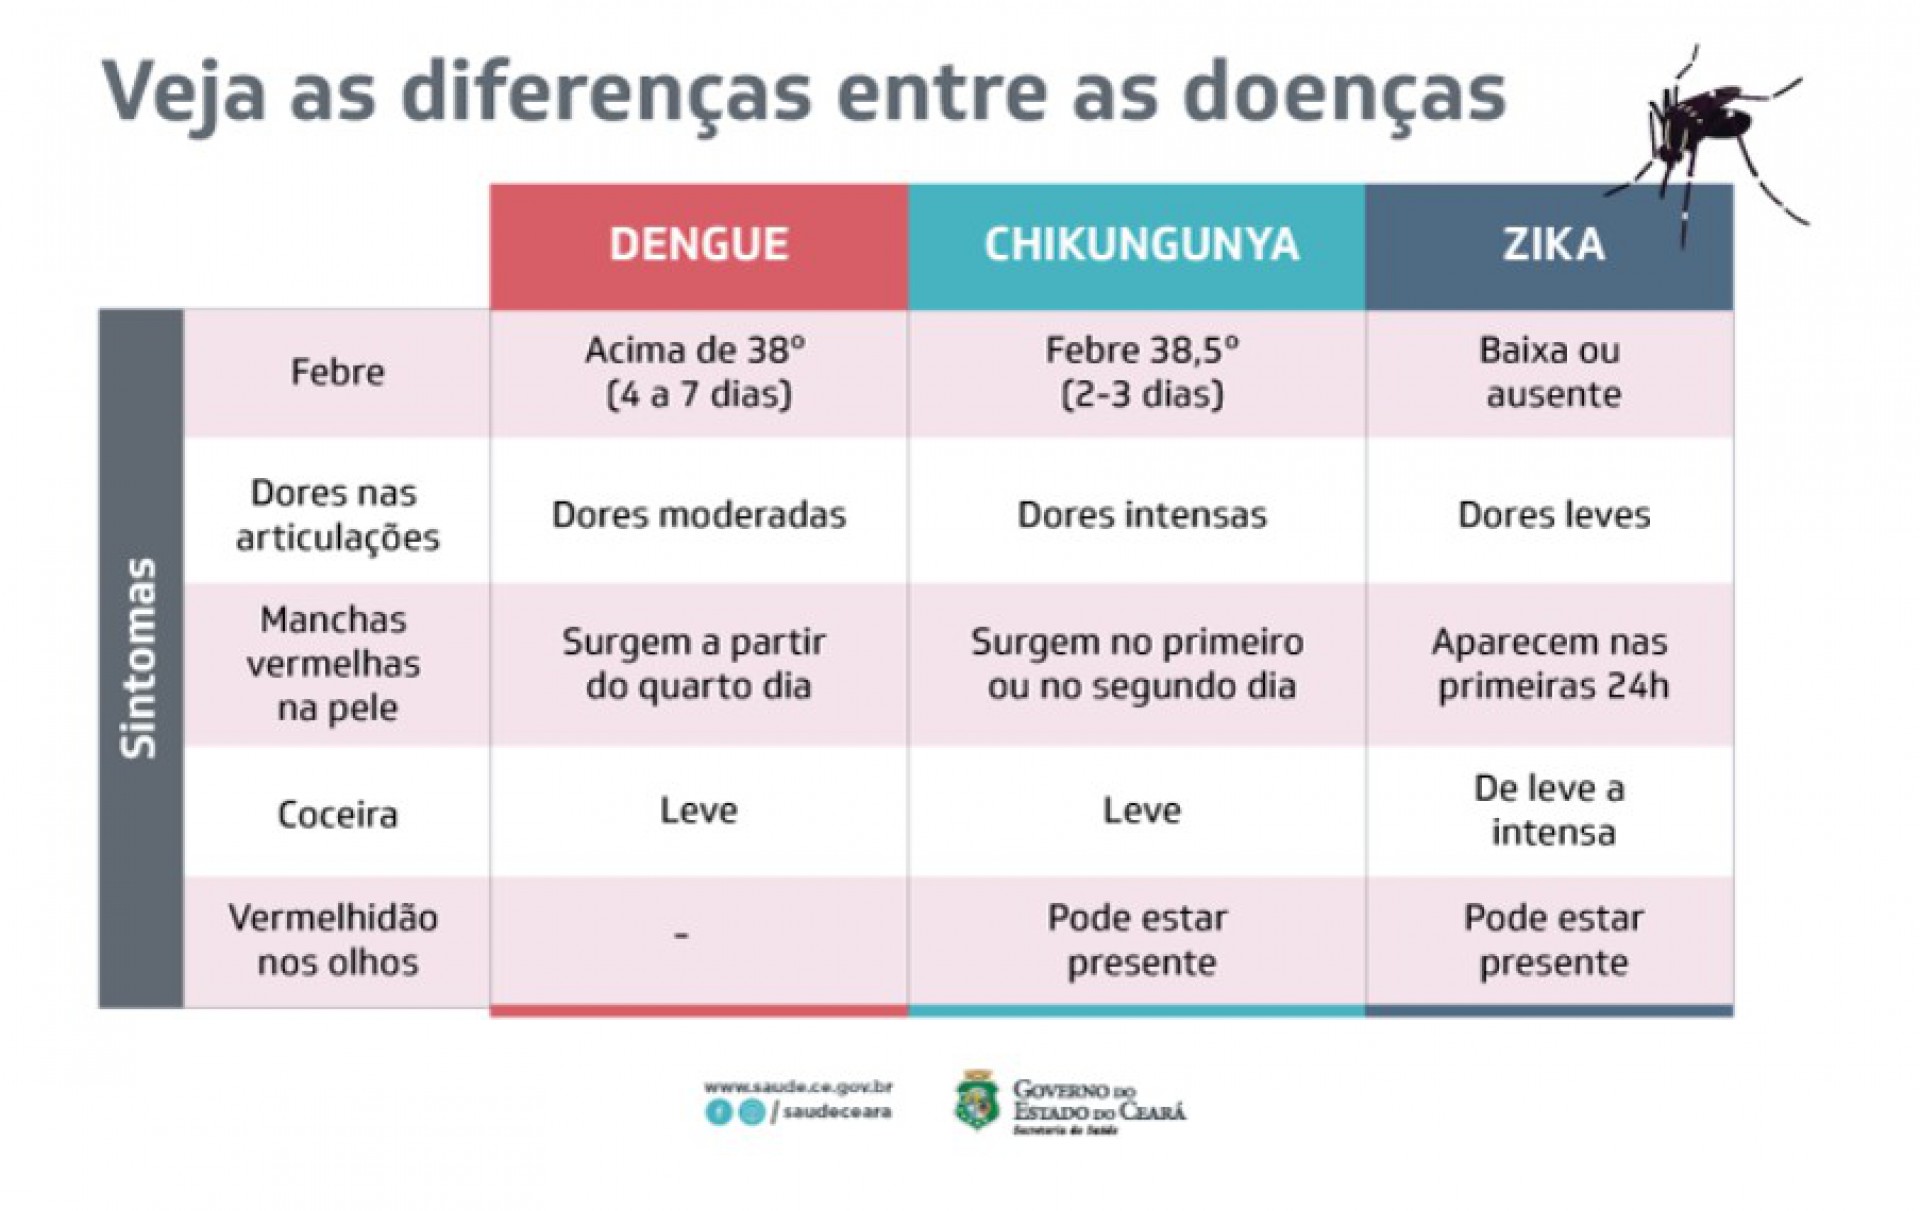 Diferenças de sintomas entre as arboviroses transmitidas pelo Aedes aegypti